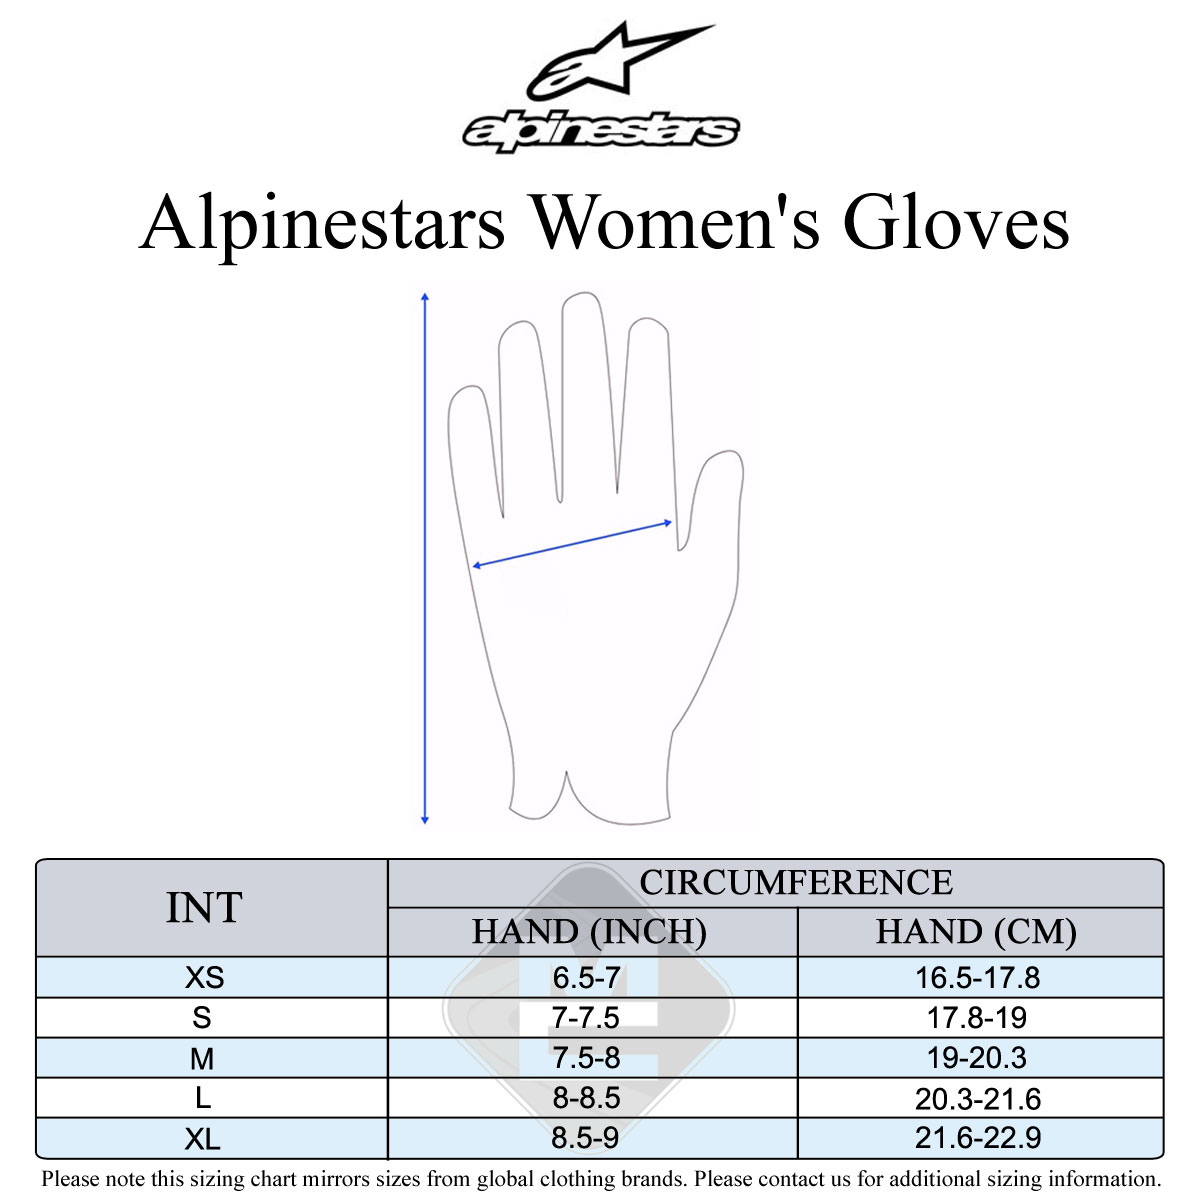 Alpinestars Women's Size Guide